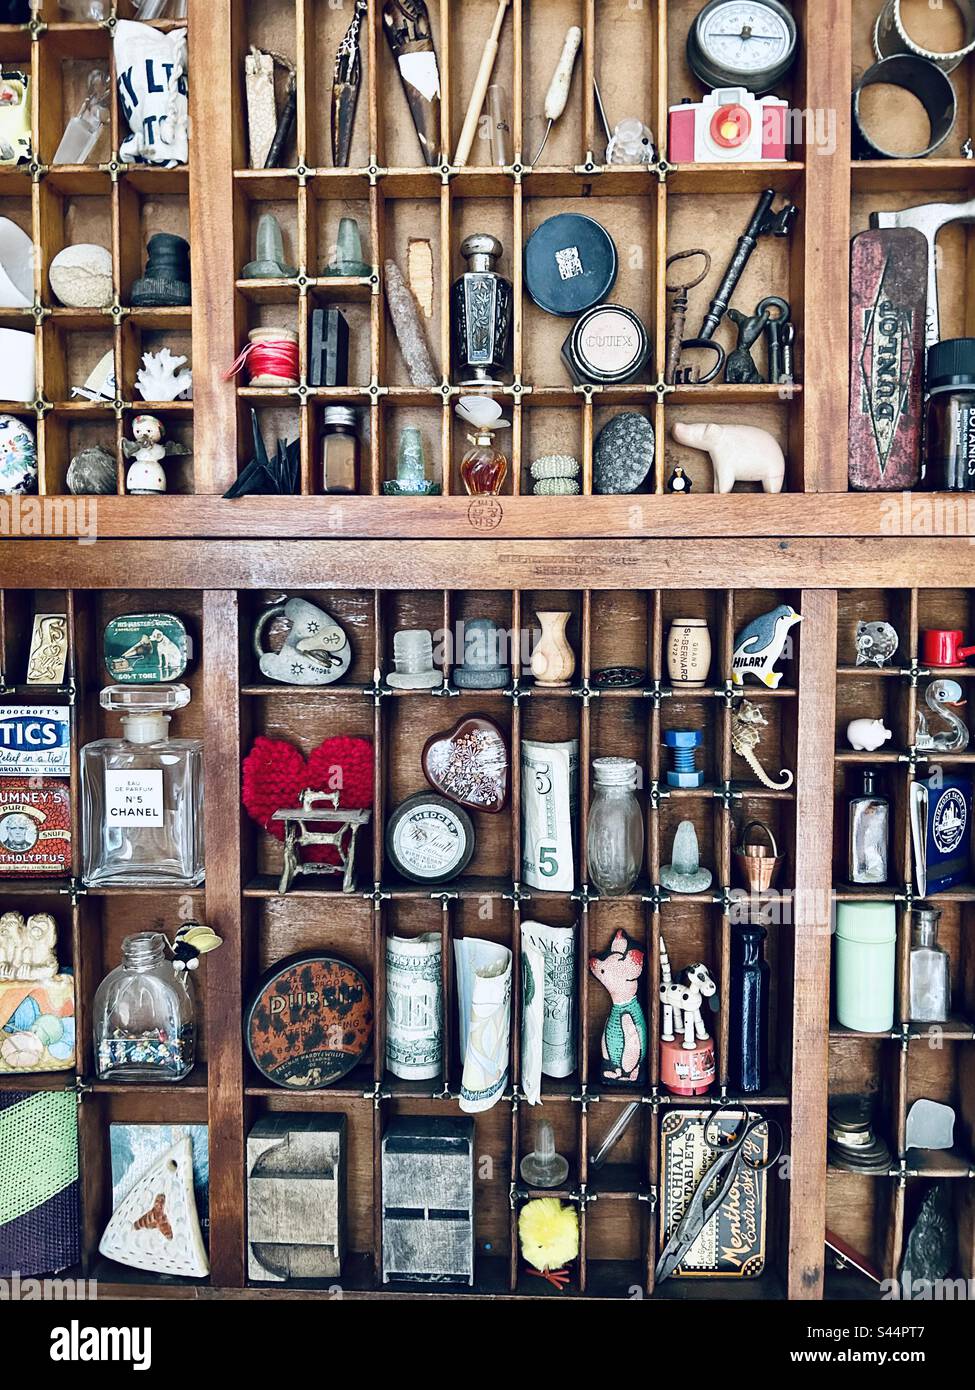 Curiosités et objets exposés sur de nombreuses petites étagères dans une cuisine Banque D'Images